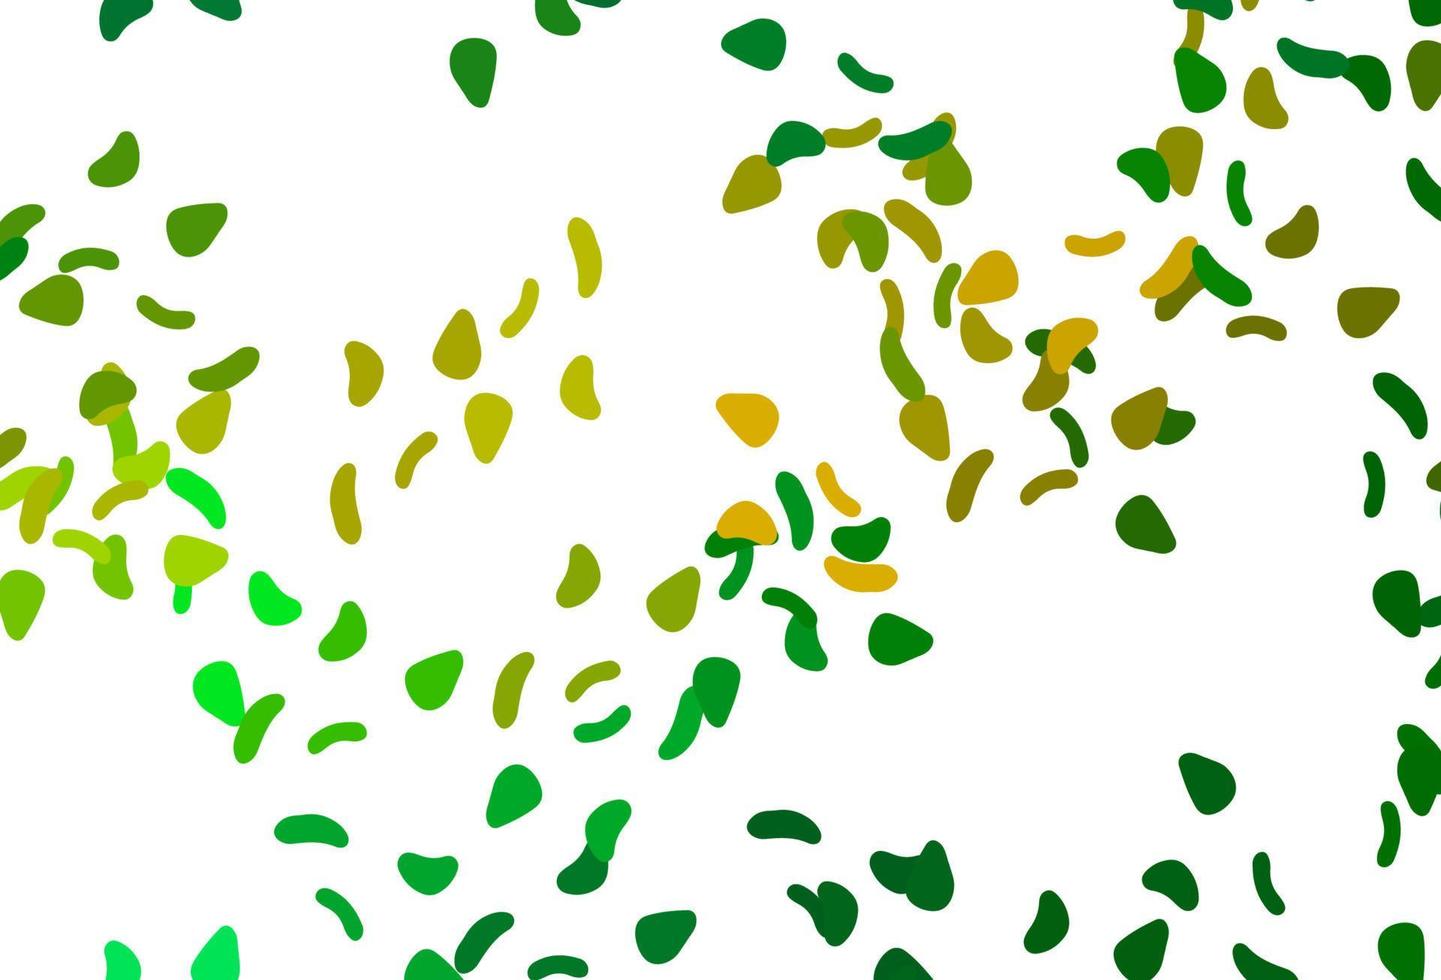 textura de vetor verde e amarelo claro com formas aleatórias.